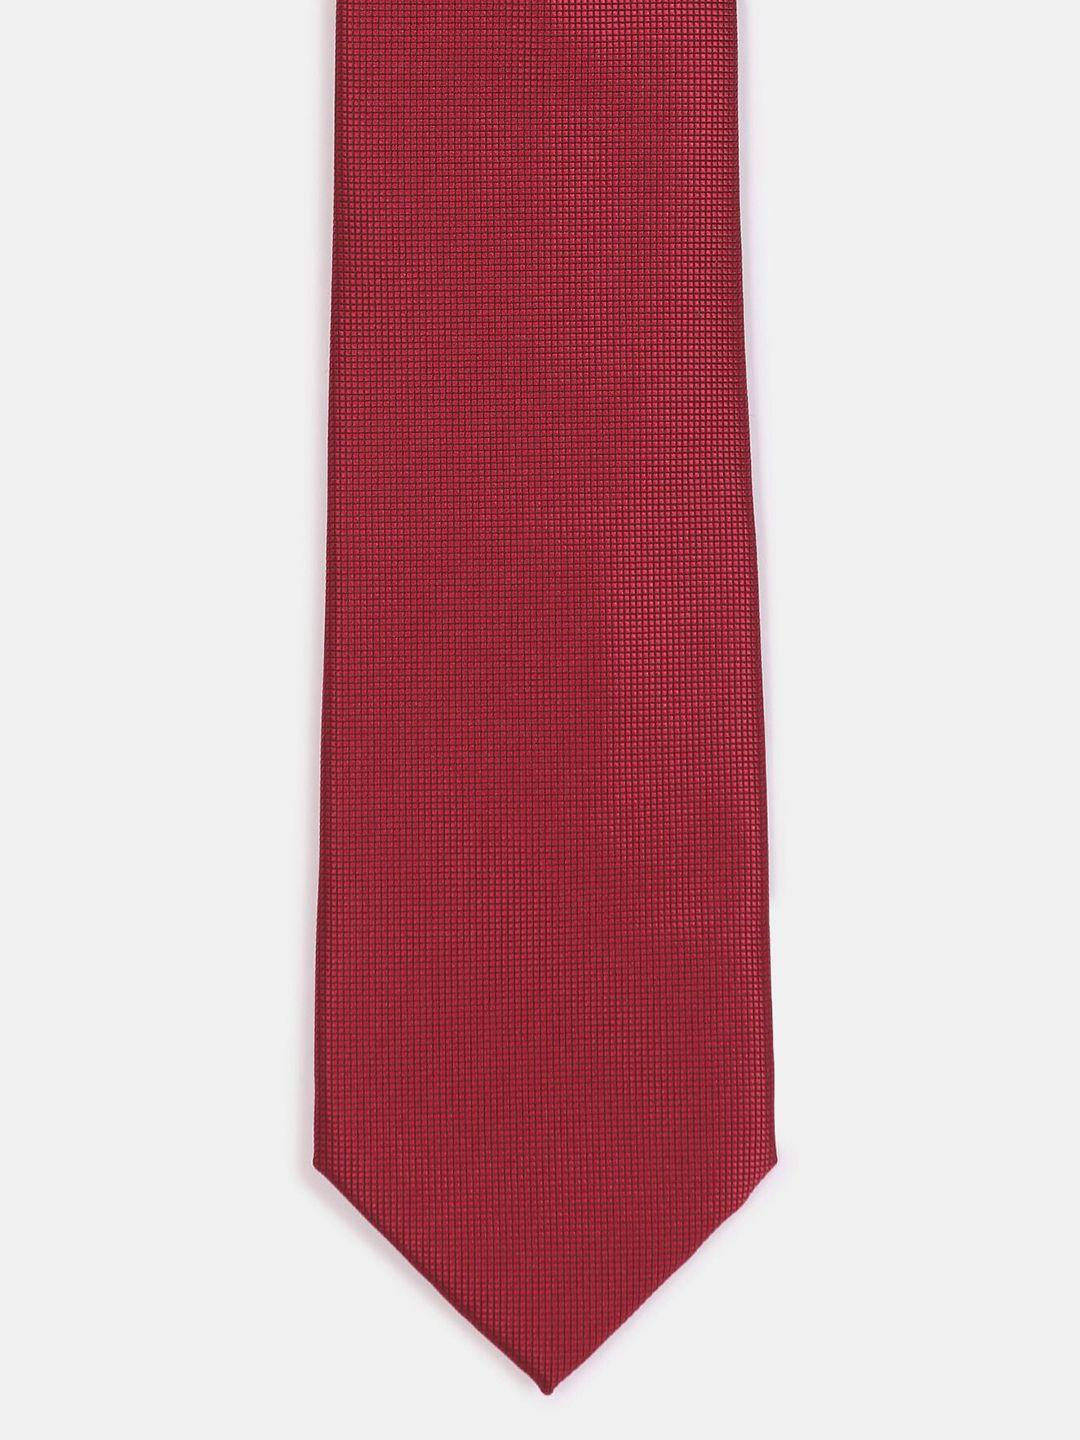 arrow men red & blue woven design broad tie